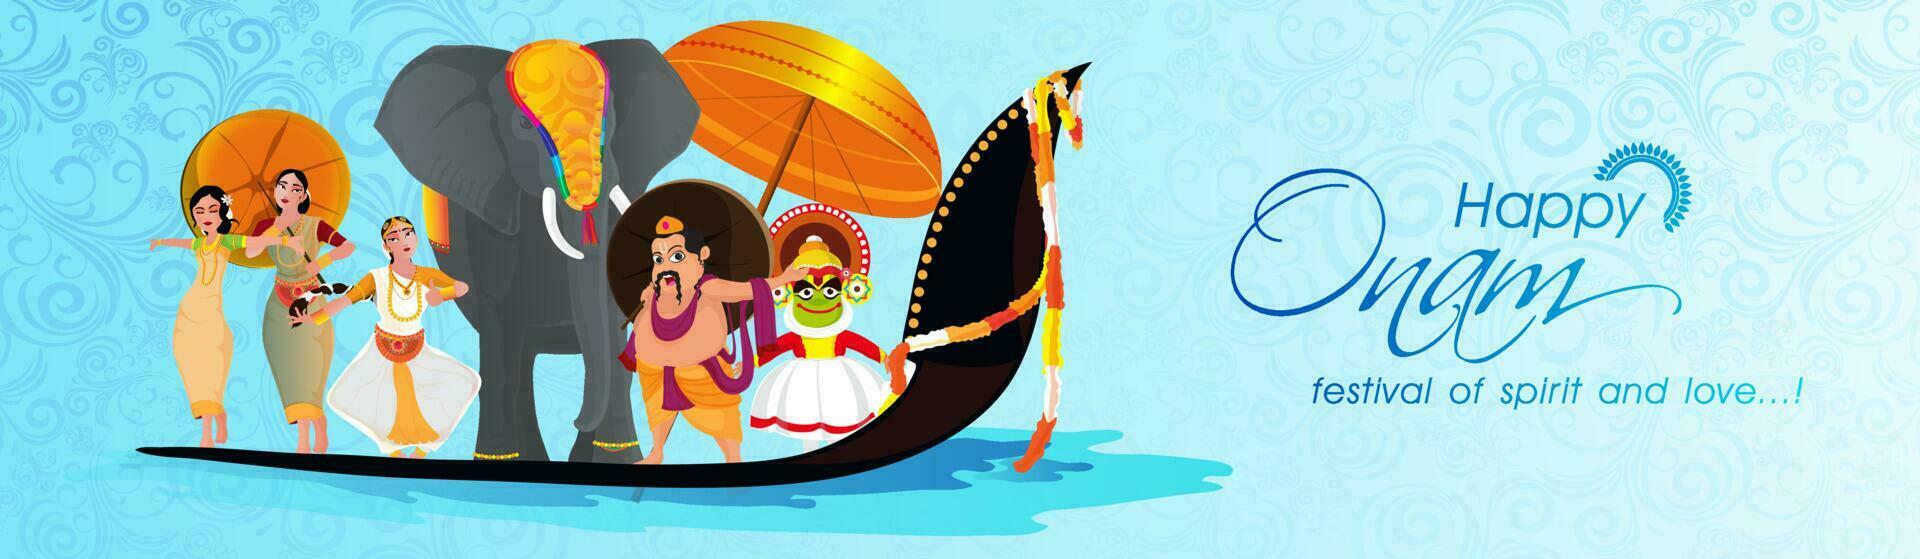 Lycklig onam baner design med illustration av kung mahabali, kathakali dansare, klassisk dansare, elefant och orm båt tävlings som visar kultur av kerala. vektor